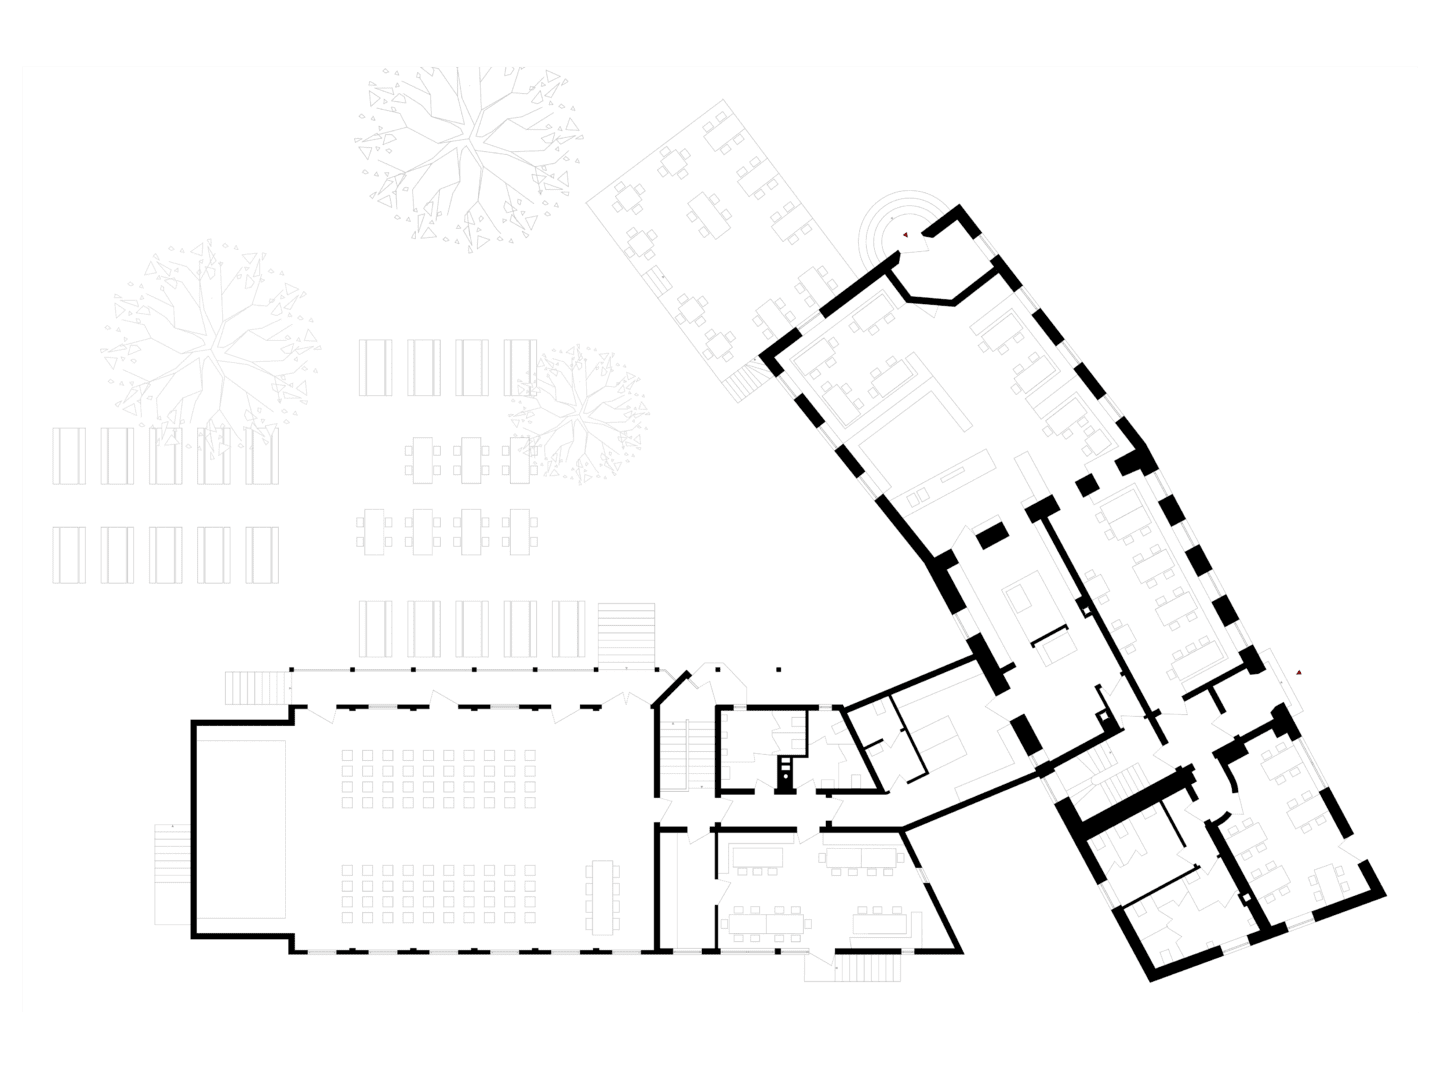 Grundriss des Traditionsgashauses Drei Rosen am Fuße der Dachauer Altstadt